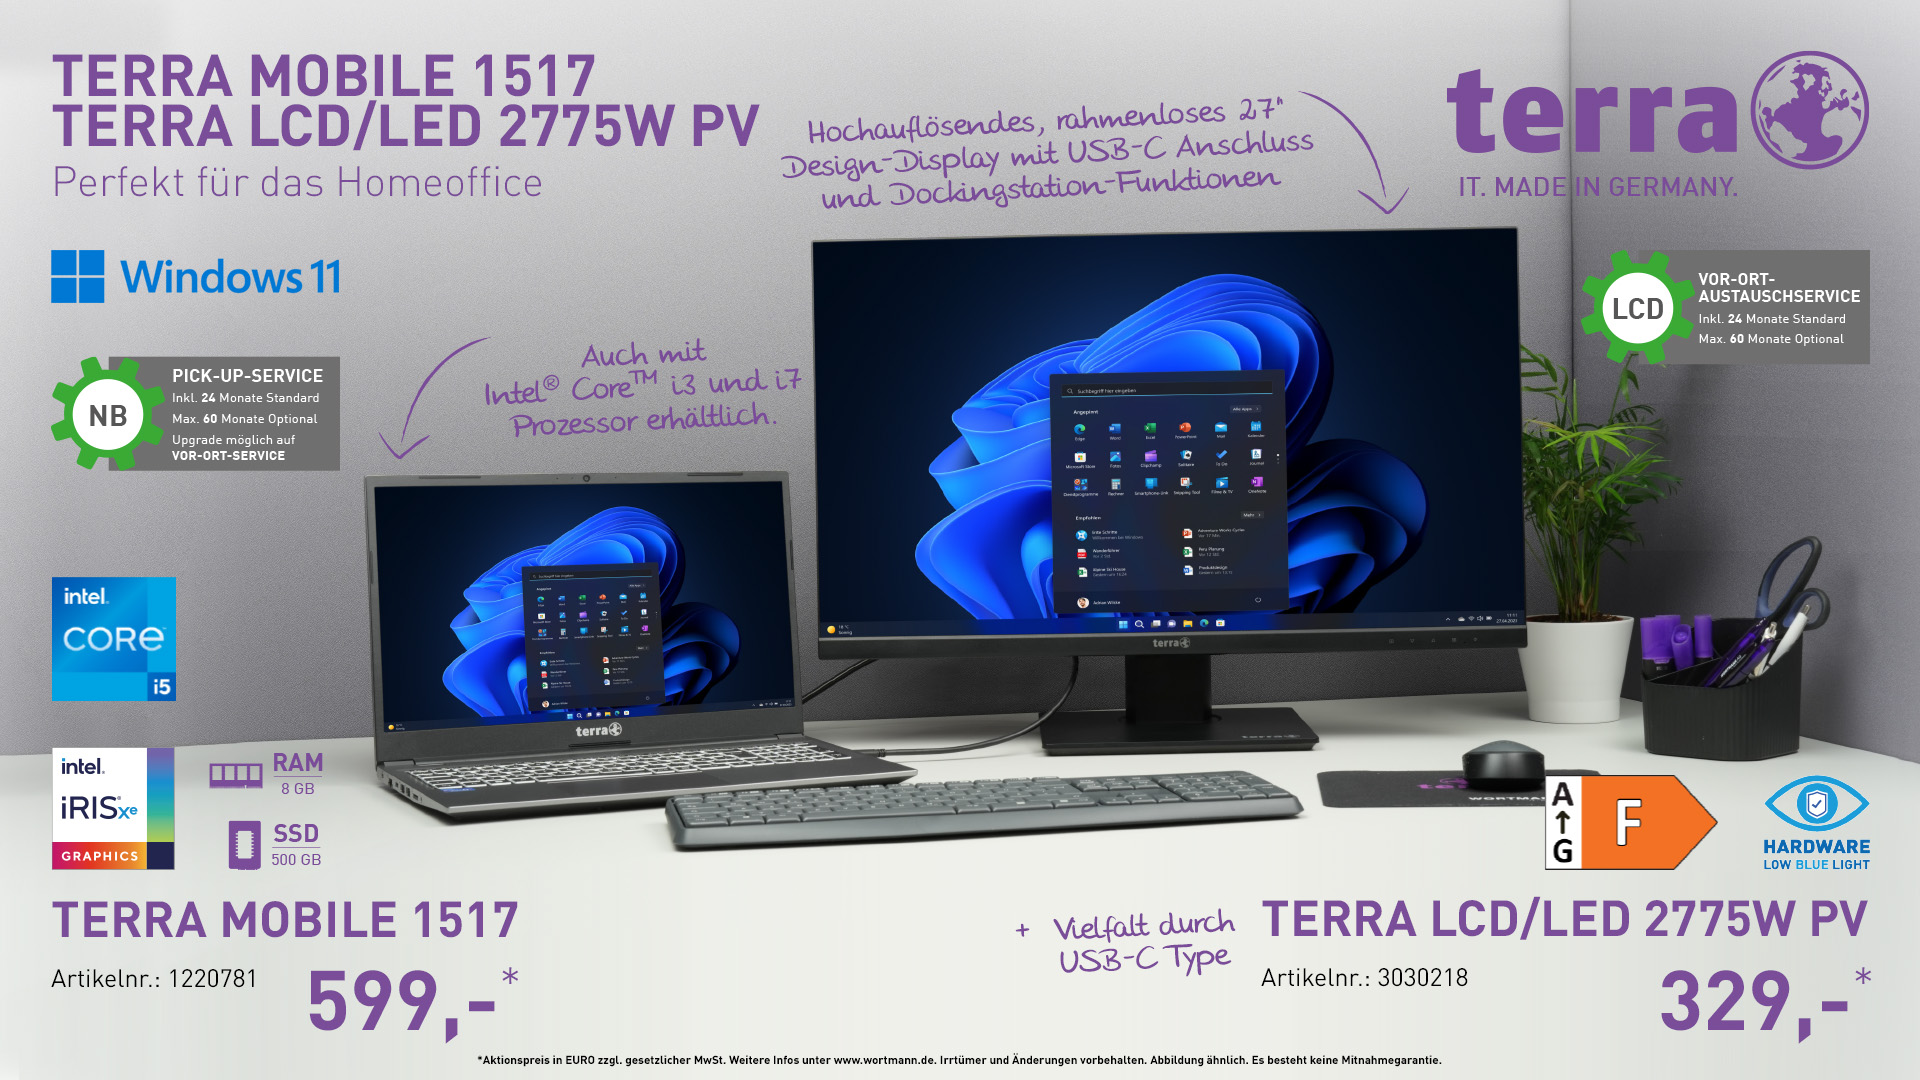 Terra Mobile 1517, Terra LCD/LED 2775W PV